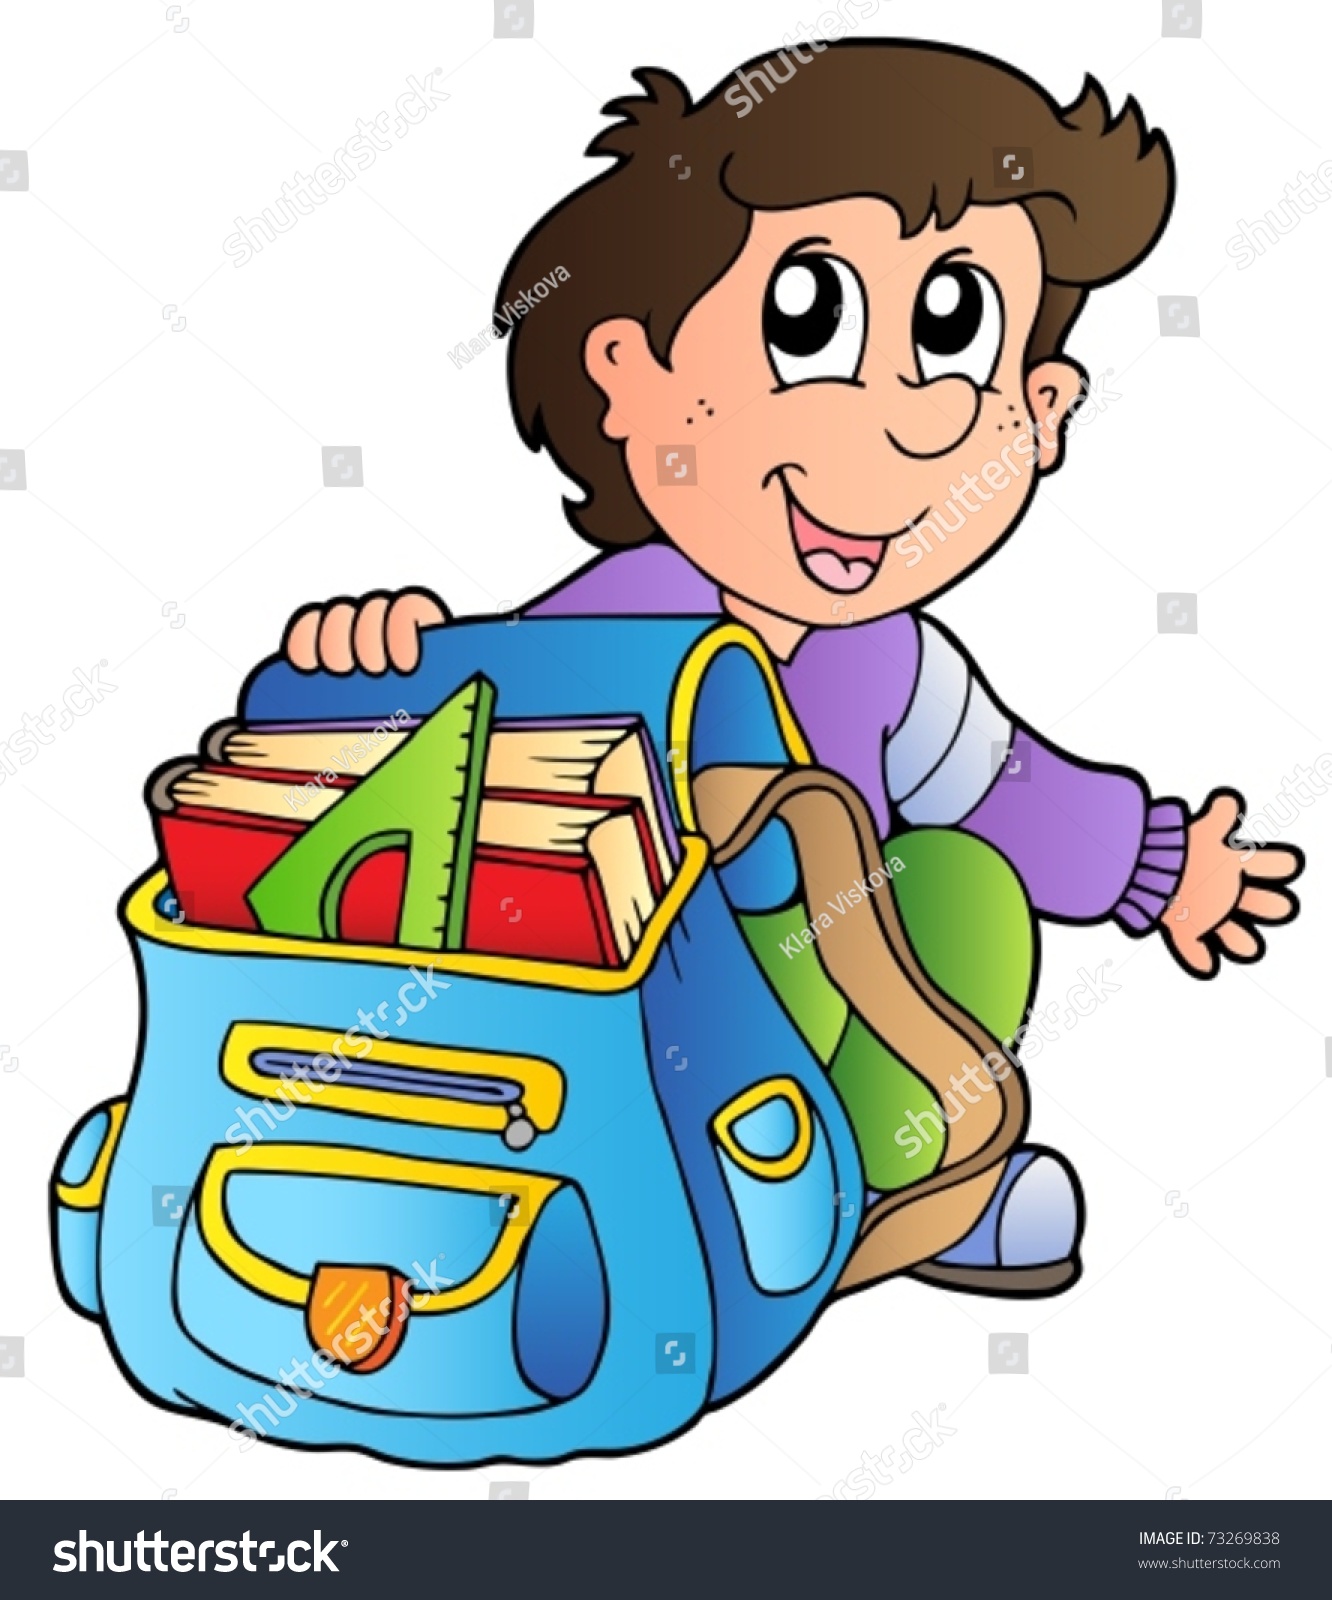 Unpack school bag clipart